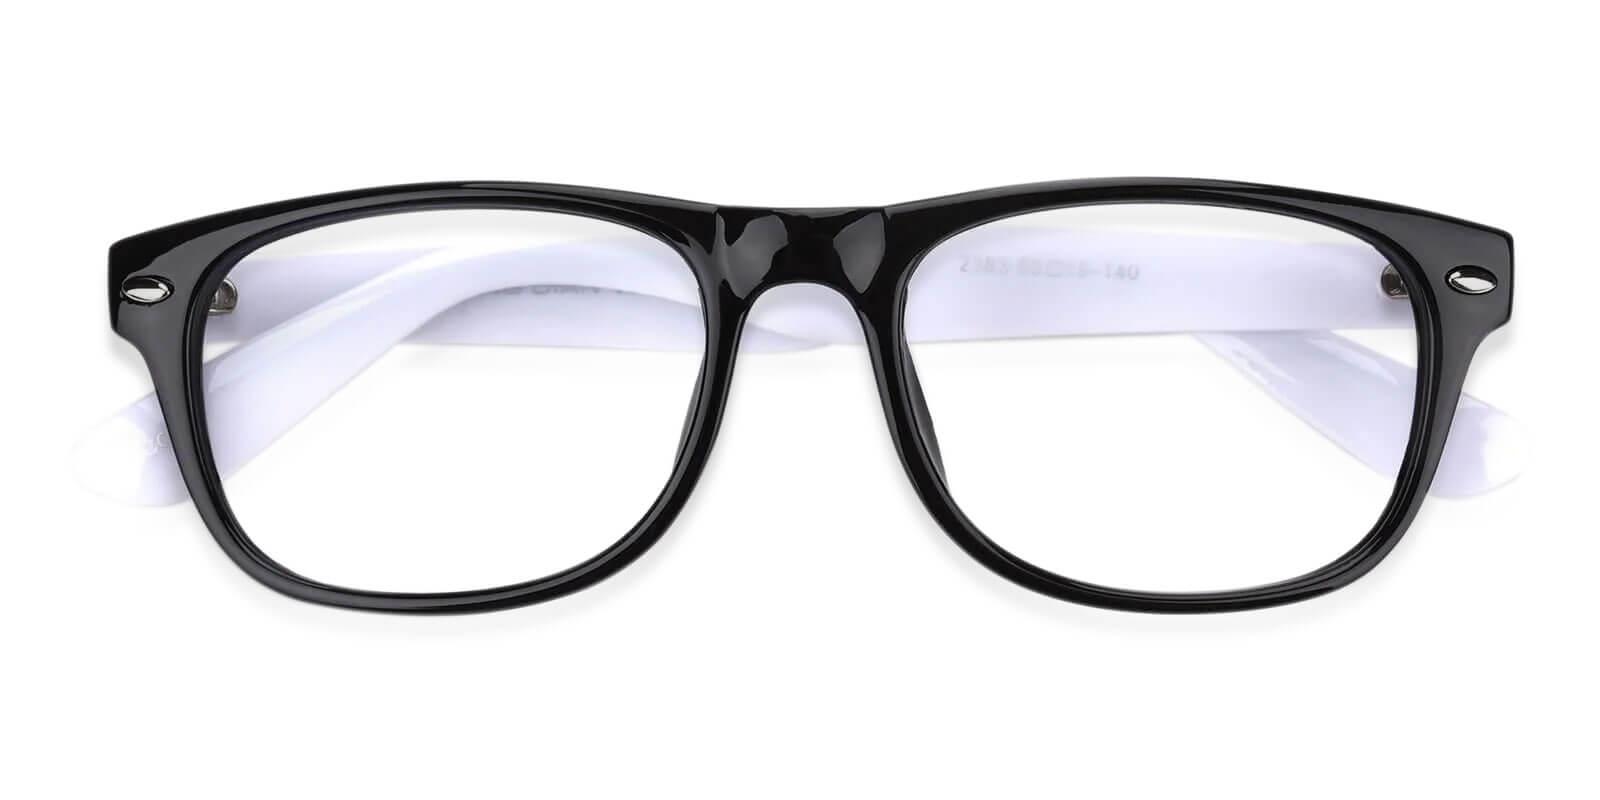 Mode Multicolor Plastic Eyeglasses , UniversalBridgeFit Frames from ABBE Glasses